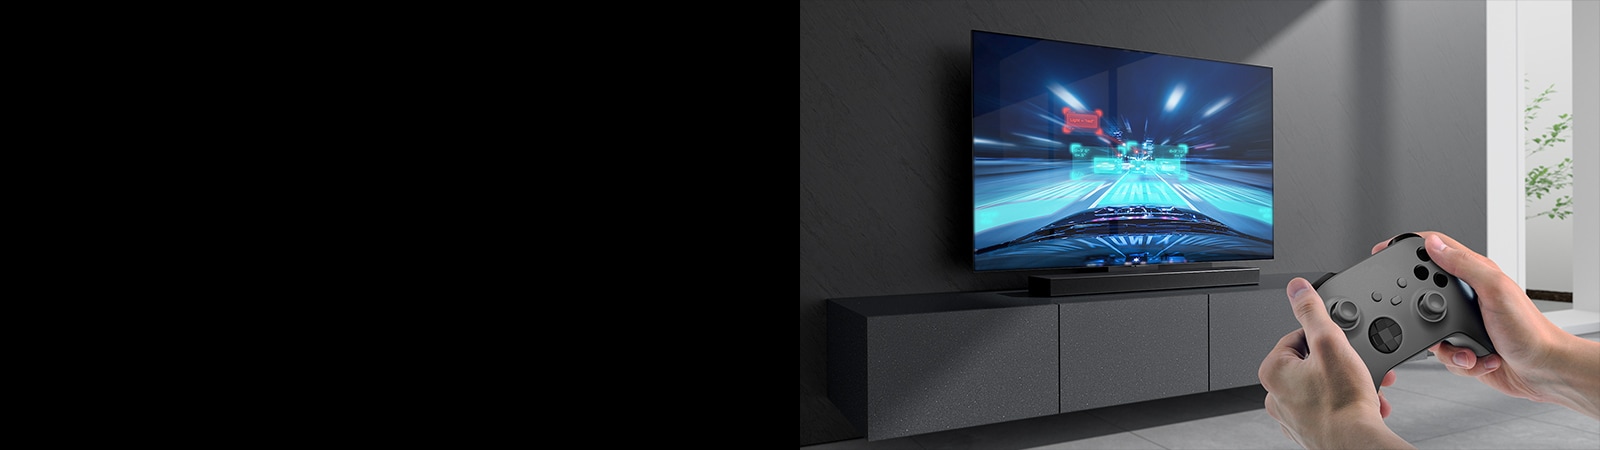 Саундбар е поставен на шкаф и на телевизор, свързан към саундбара, се показва сцена от състезателна игра. Игрална конзола е в долния десен ъгъл на снимката и е държана с две ръце.